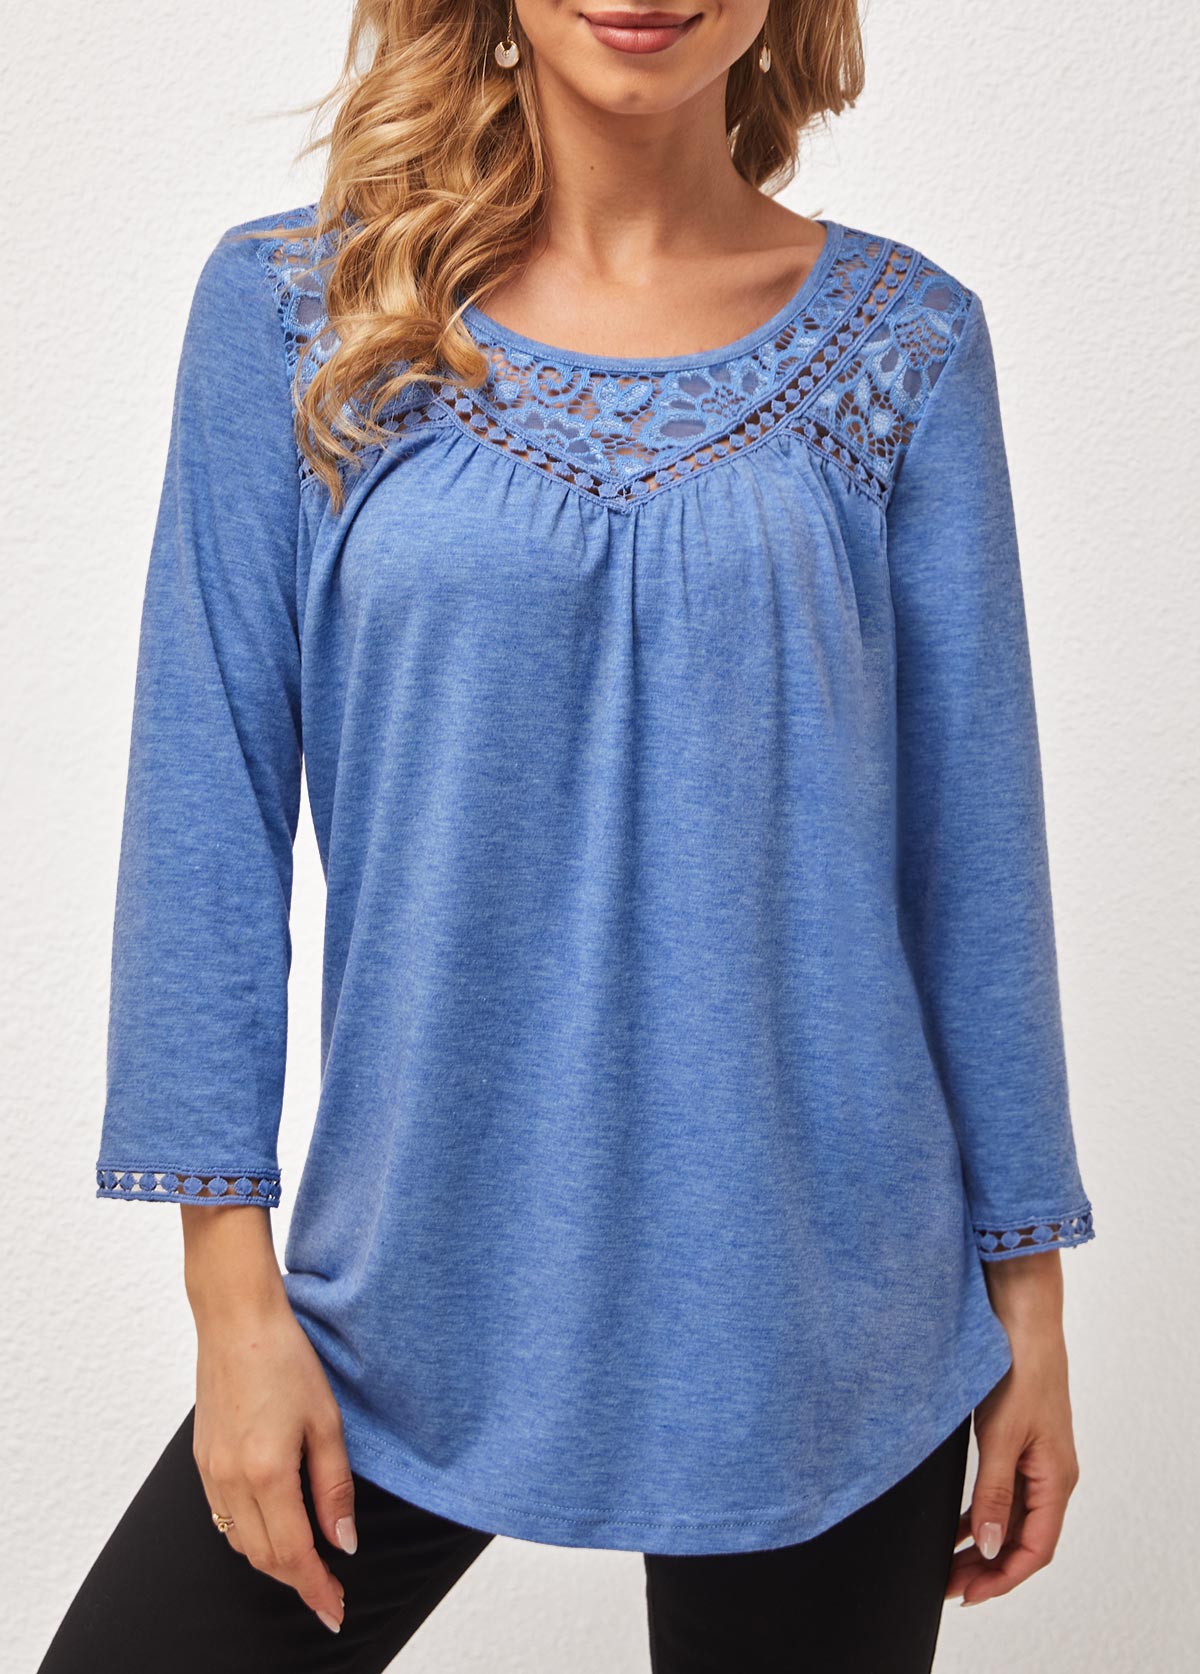 Lace Stitching Round Neck Blue T Shirt